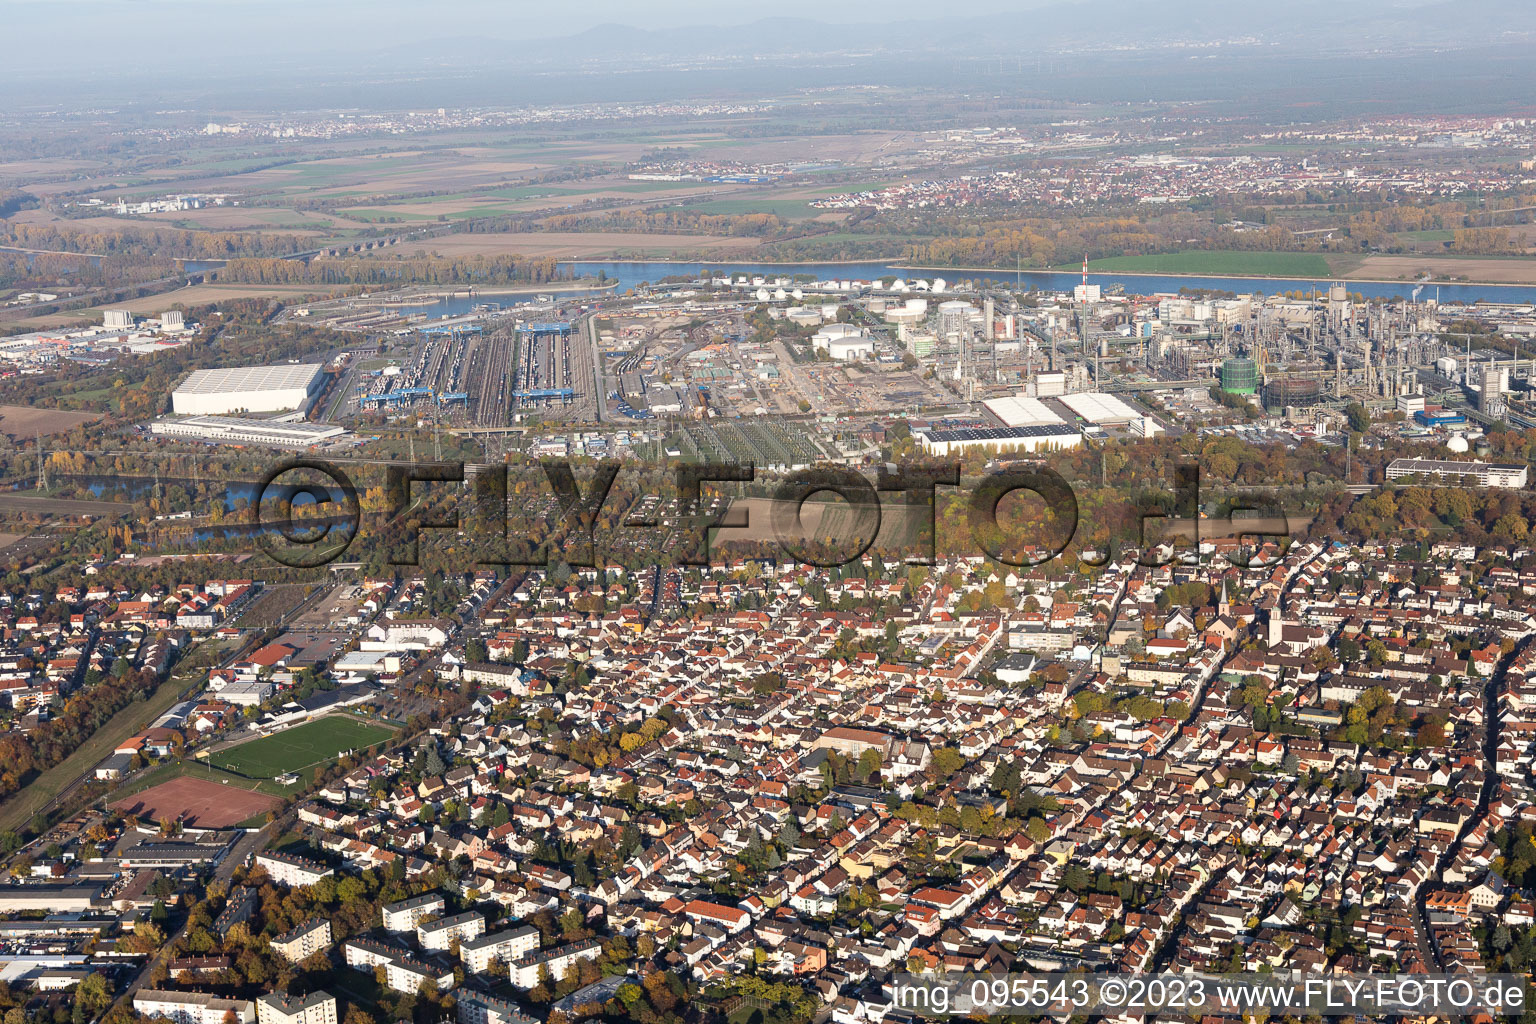 Ortsteil BASF in Ludwigshafen am Rhein im Bundesland Rheinland-Pfalz, Deutschland von der Drohne aus gesehen